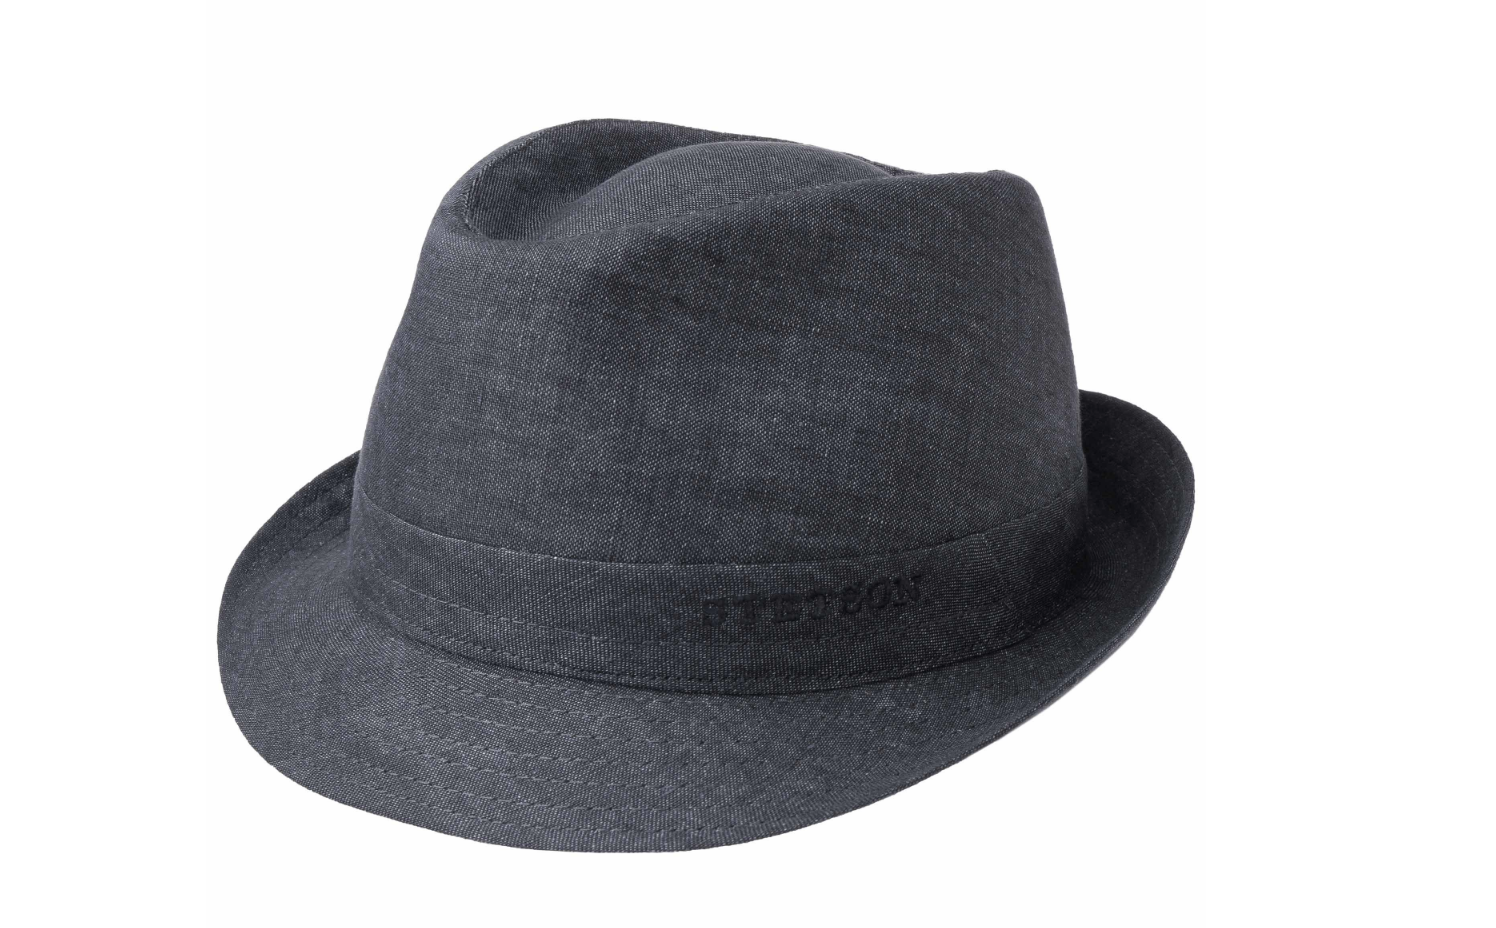 Kopfbedeckungen für Bartträger: Der Trilby-Hut.